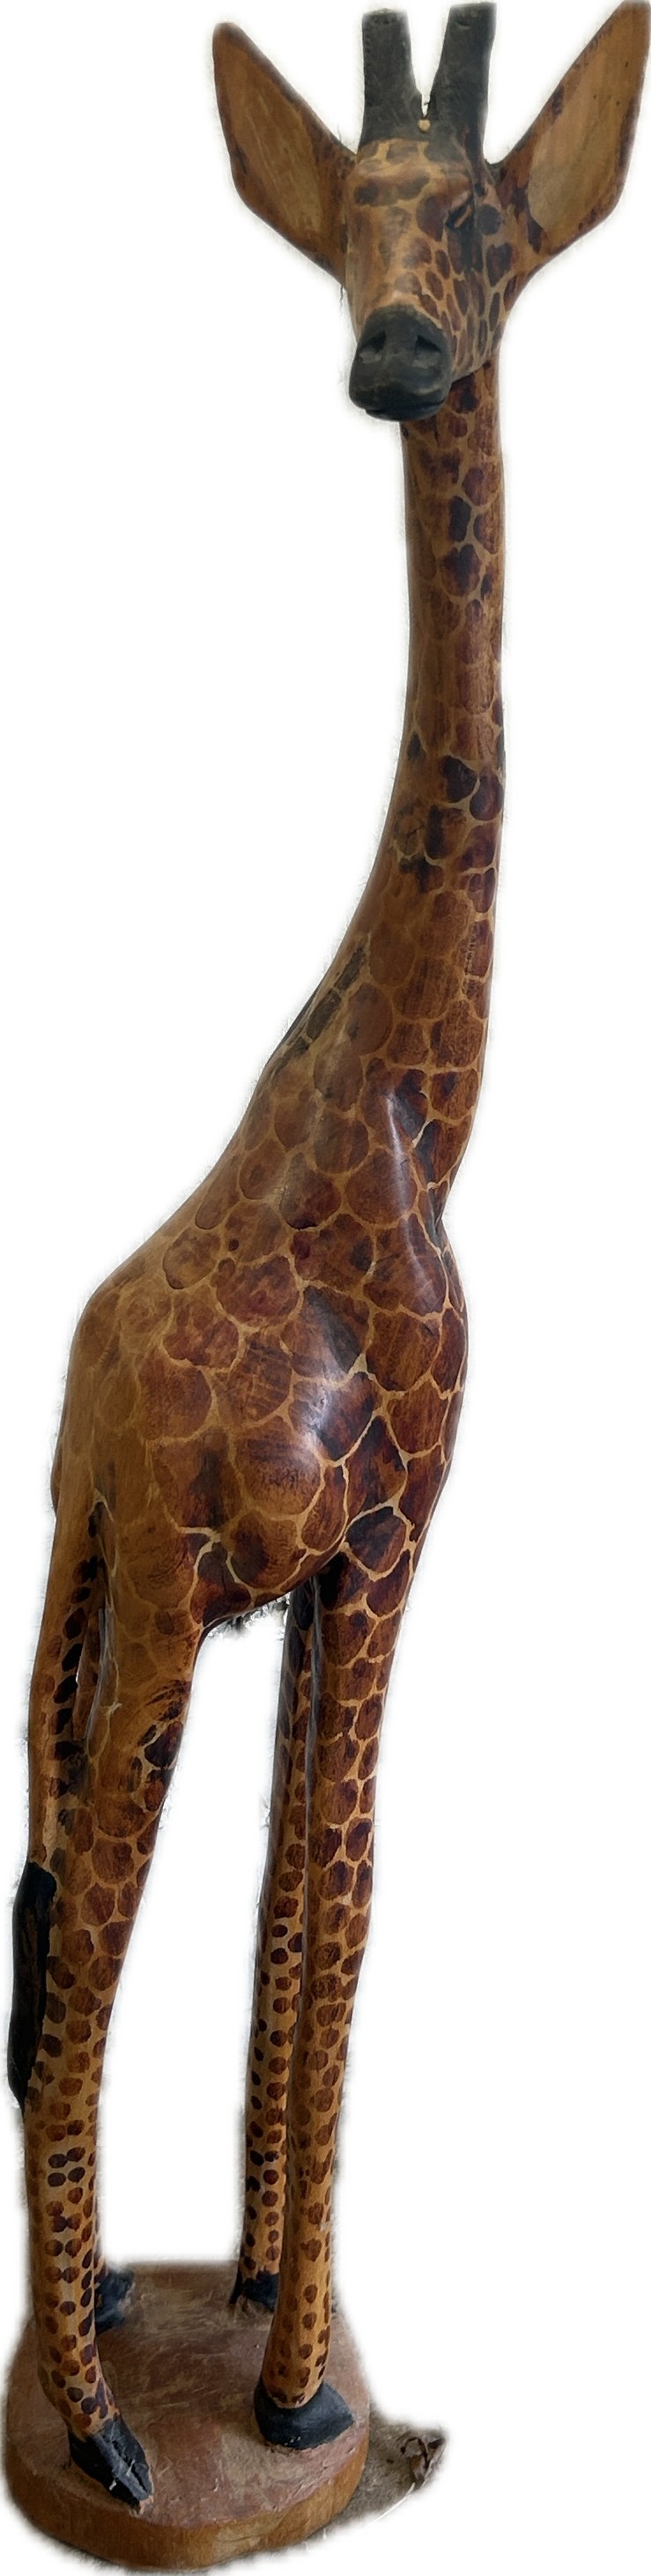 Tall wooden Giraffe, height 50 inches